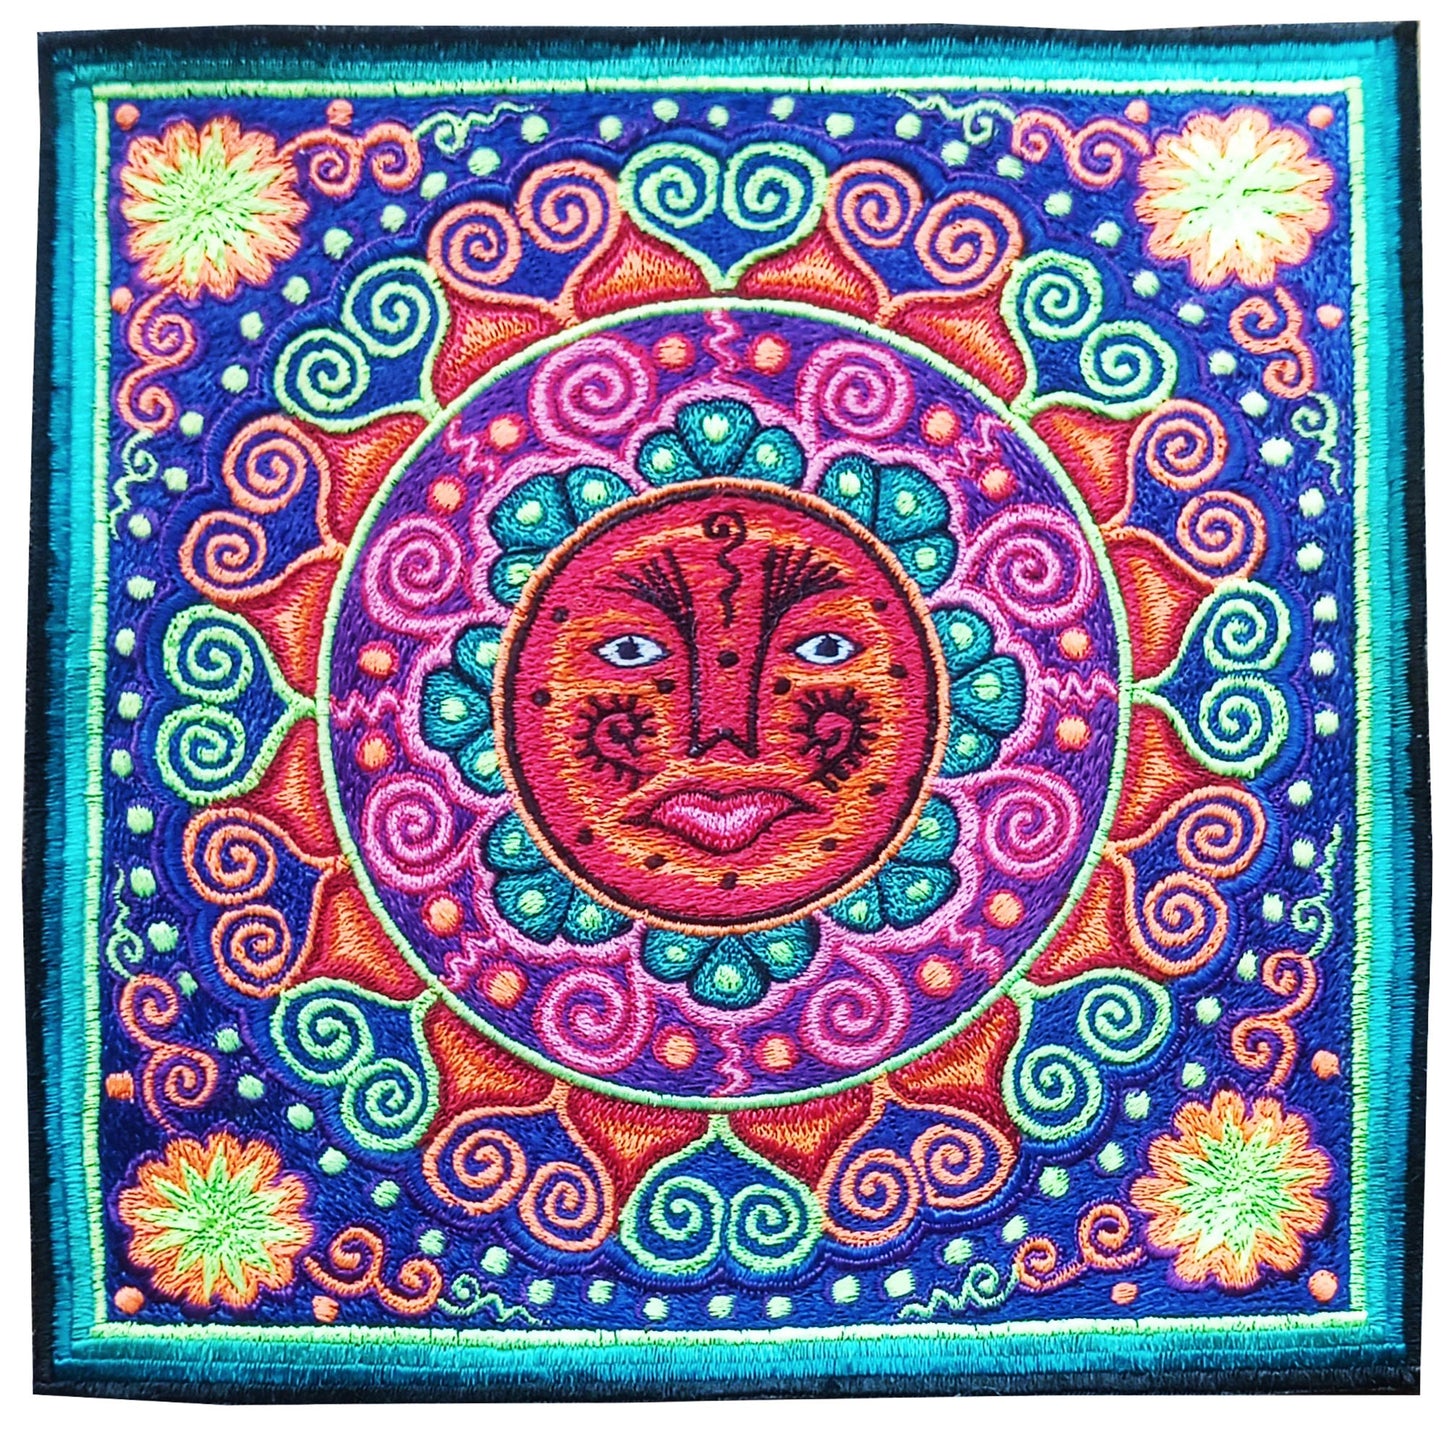 Huichol Sun Mandala embroidery art shaman artwork mescaline blacklight glowing magic cactus indigene decoration UV active shining